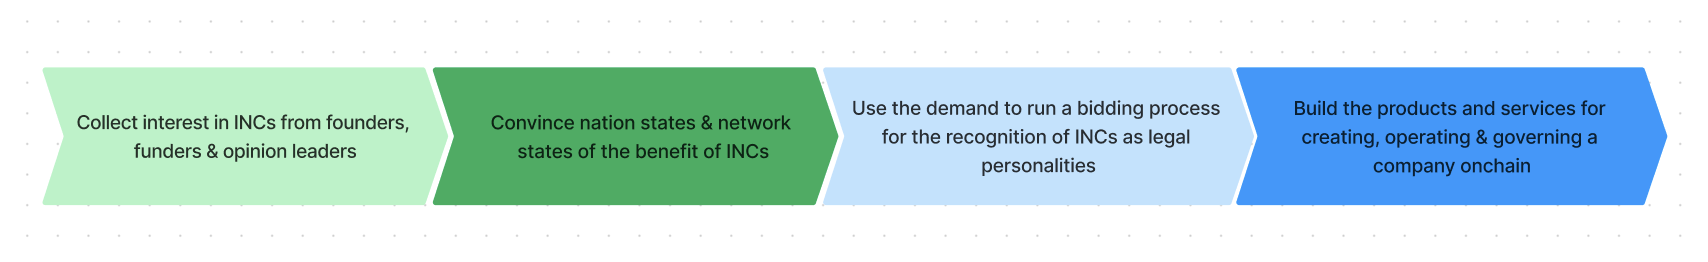 Demand first approach to INCs